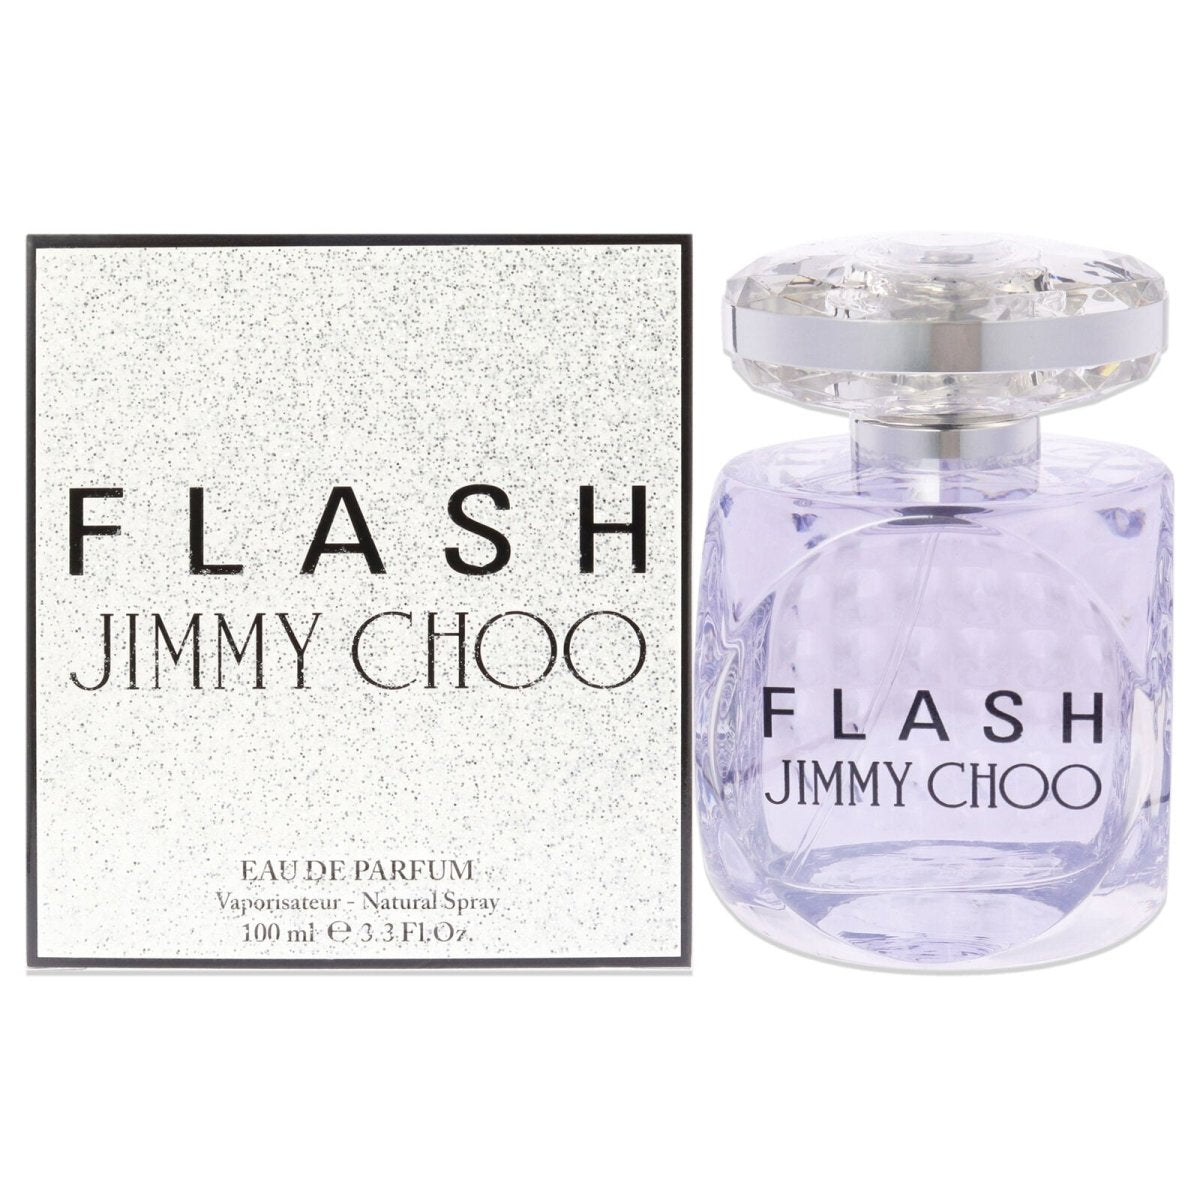 Jimmy Choo Flash 3.3 oz EDP Spray Ladies Fragrance - Jimmy Choo - Fragrance